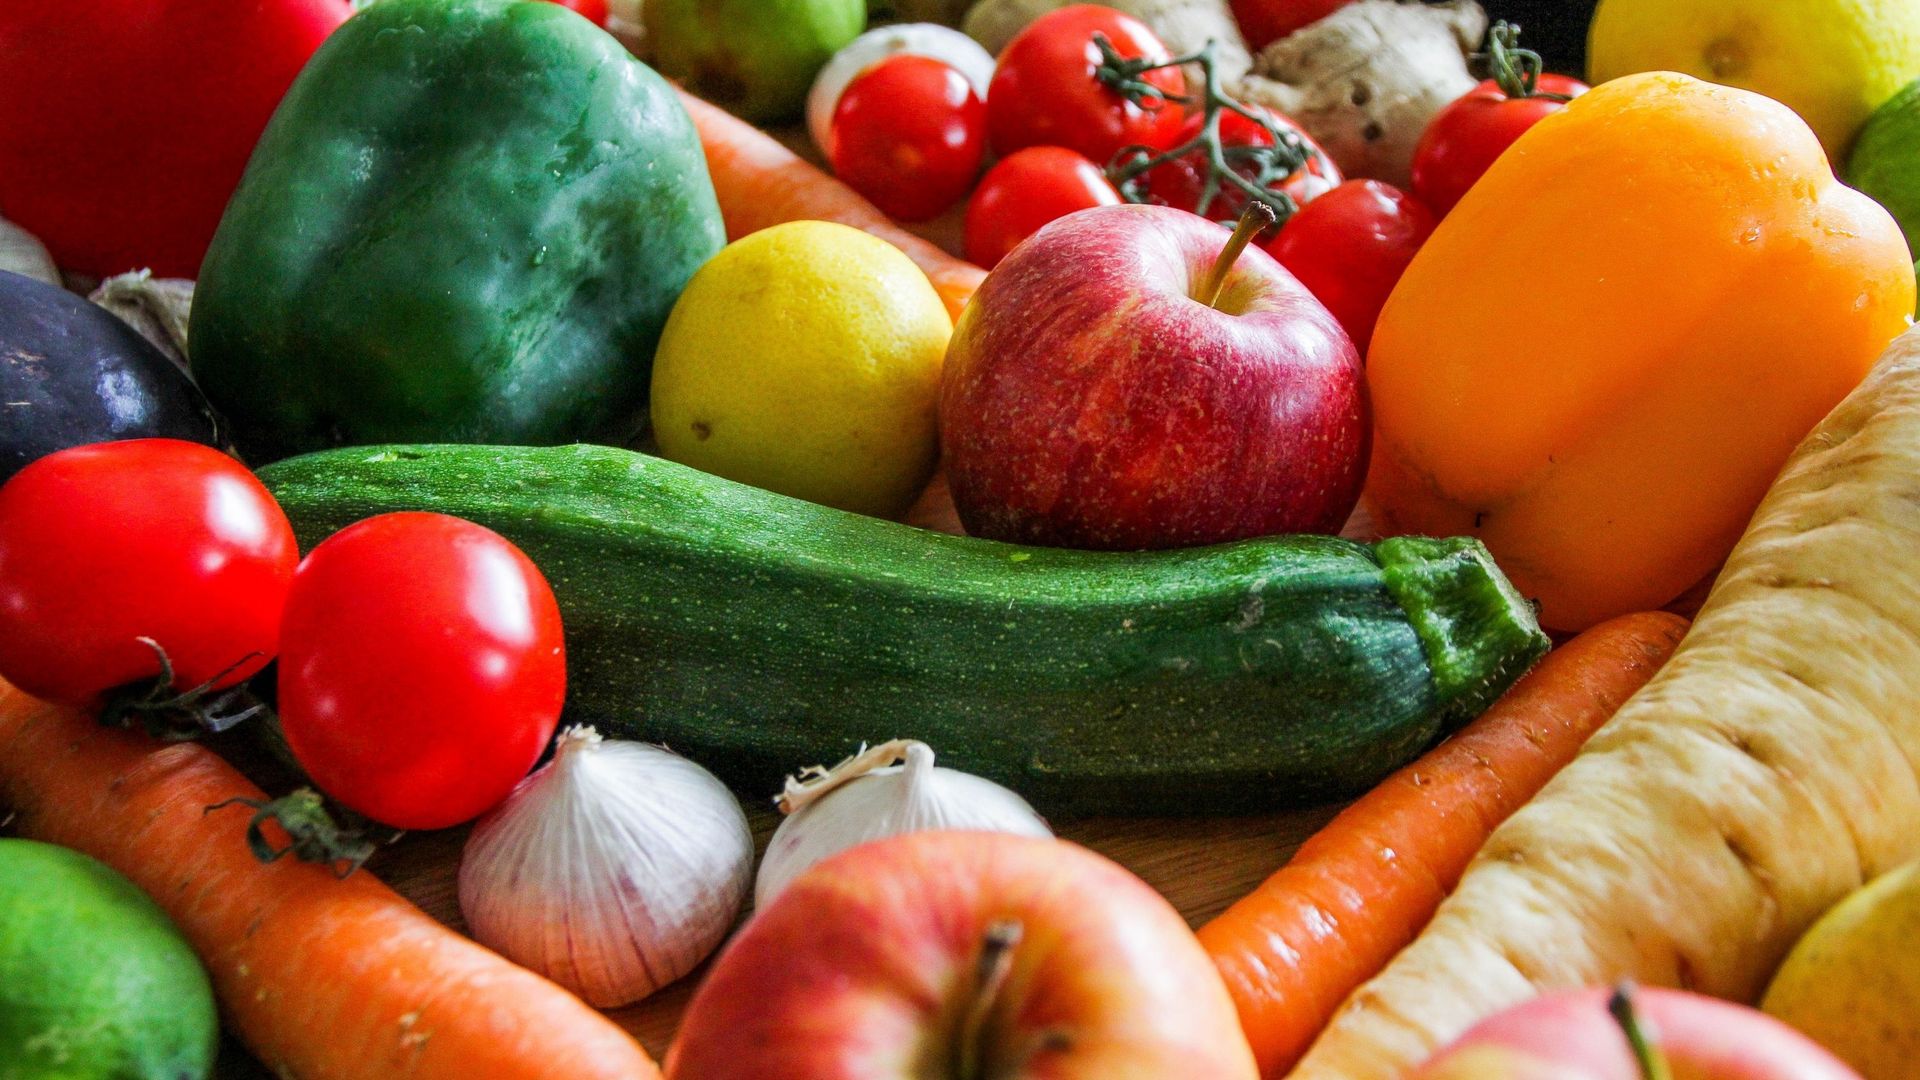 Secondo uno studio, frutta e verdura fanno male alla salute